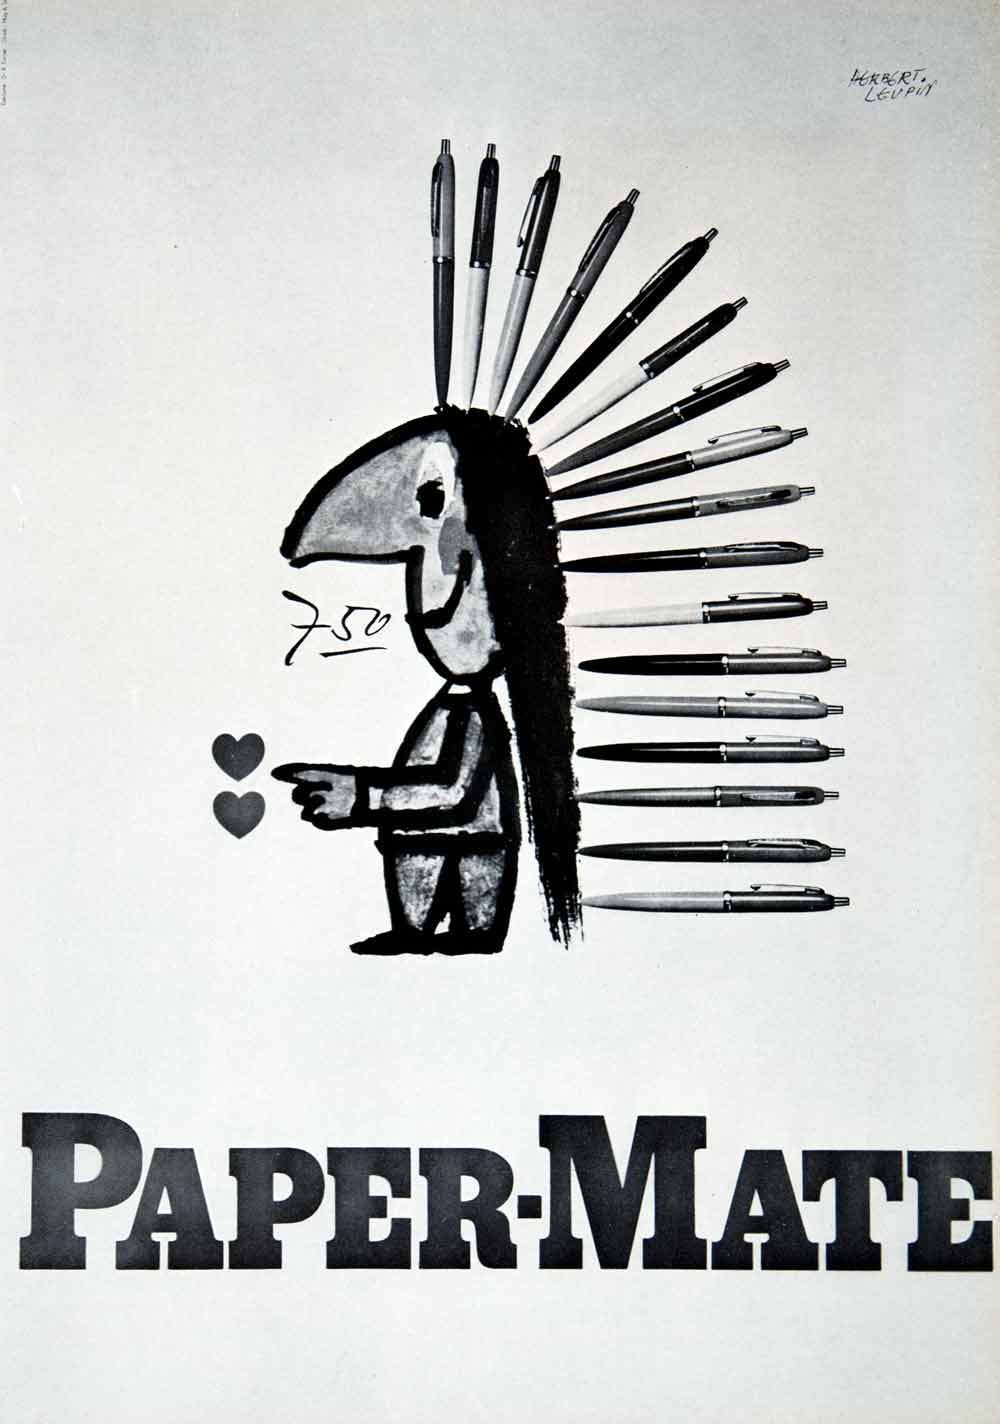 1956 Print Herbert Leupin Paper-Mate Ballpoint Pen Heart Indian Sketch VEN7